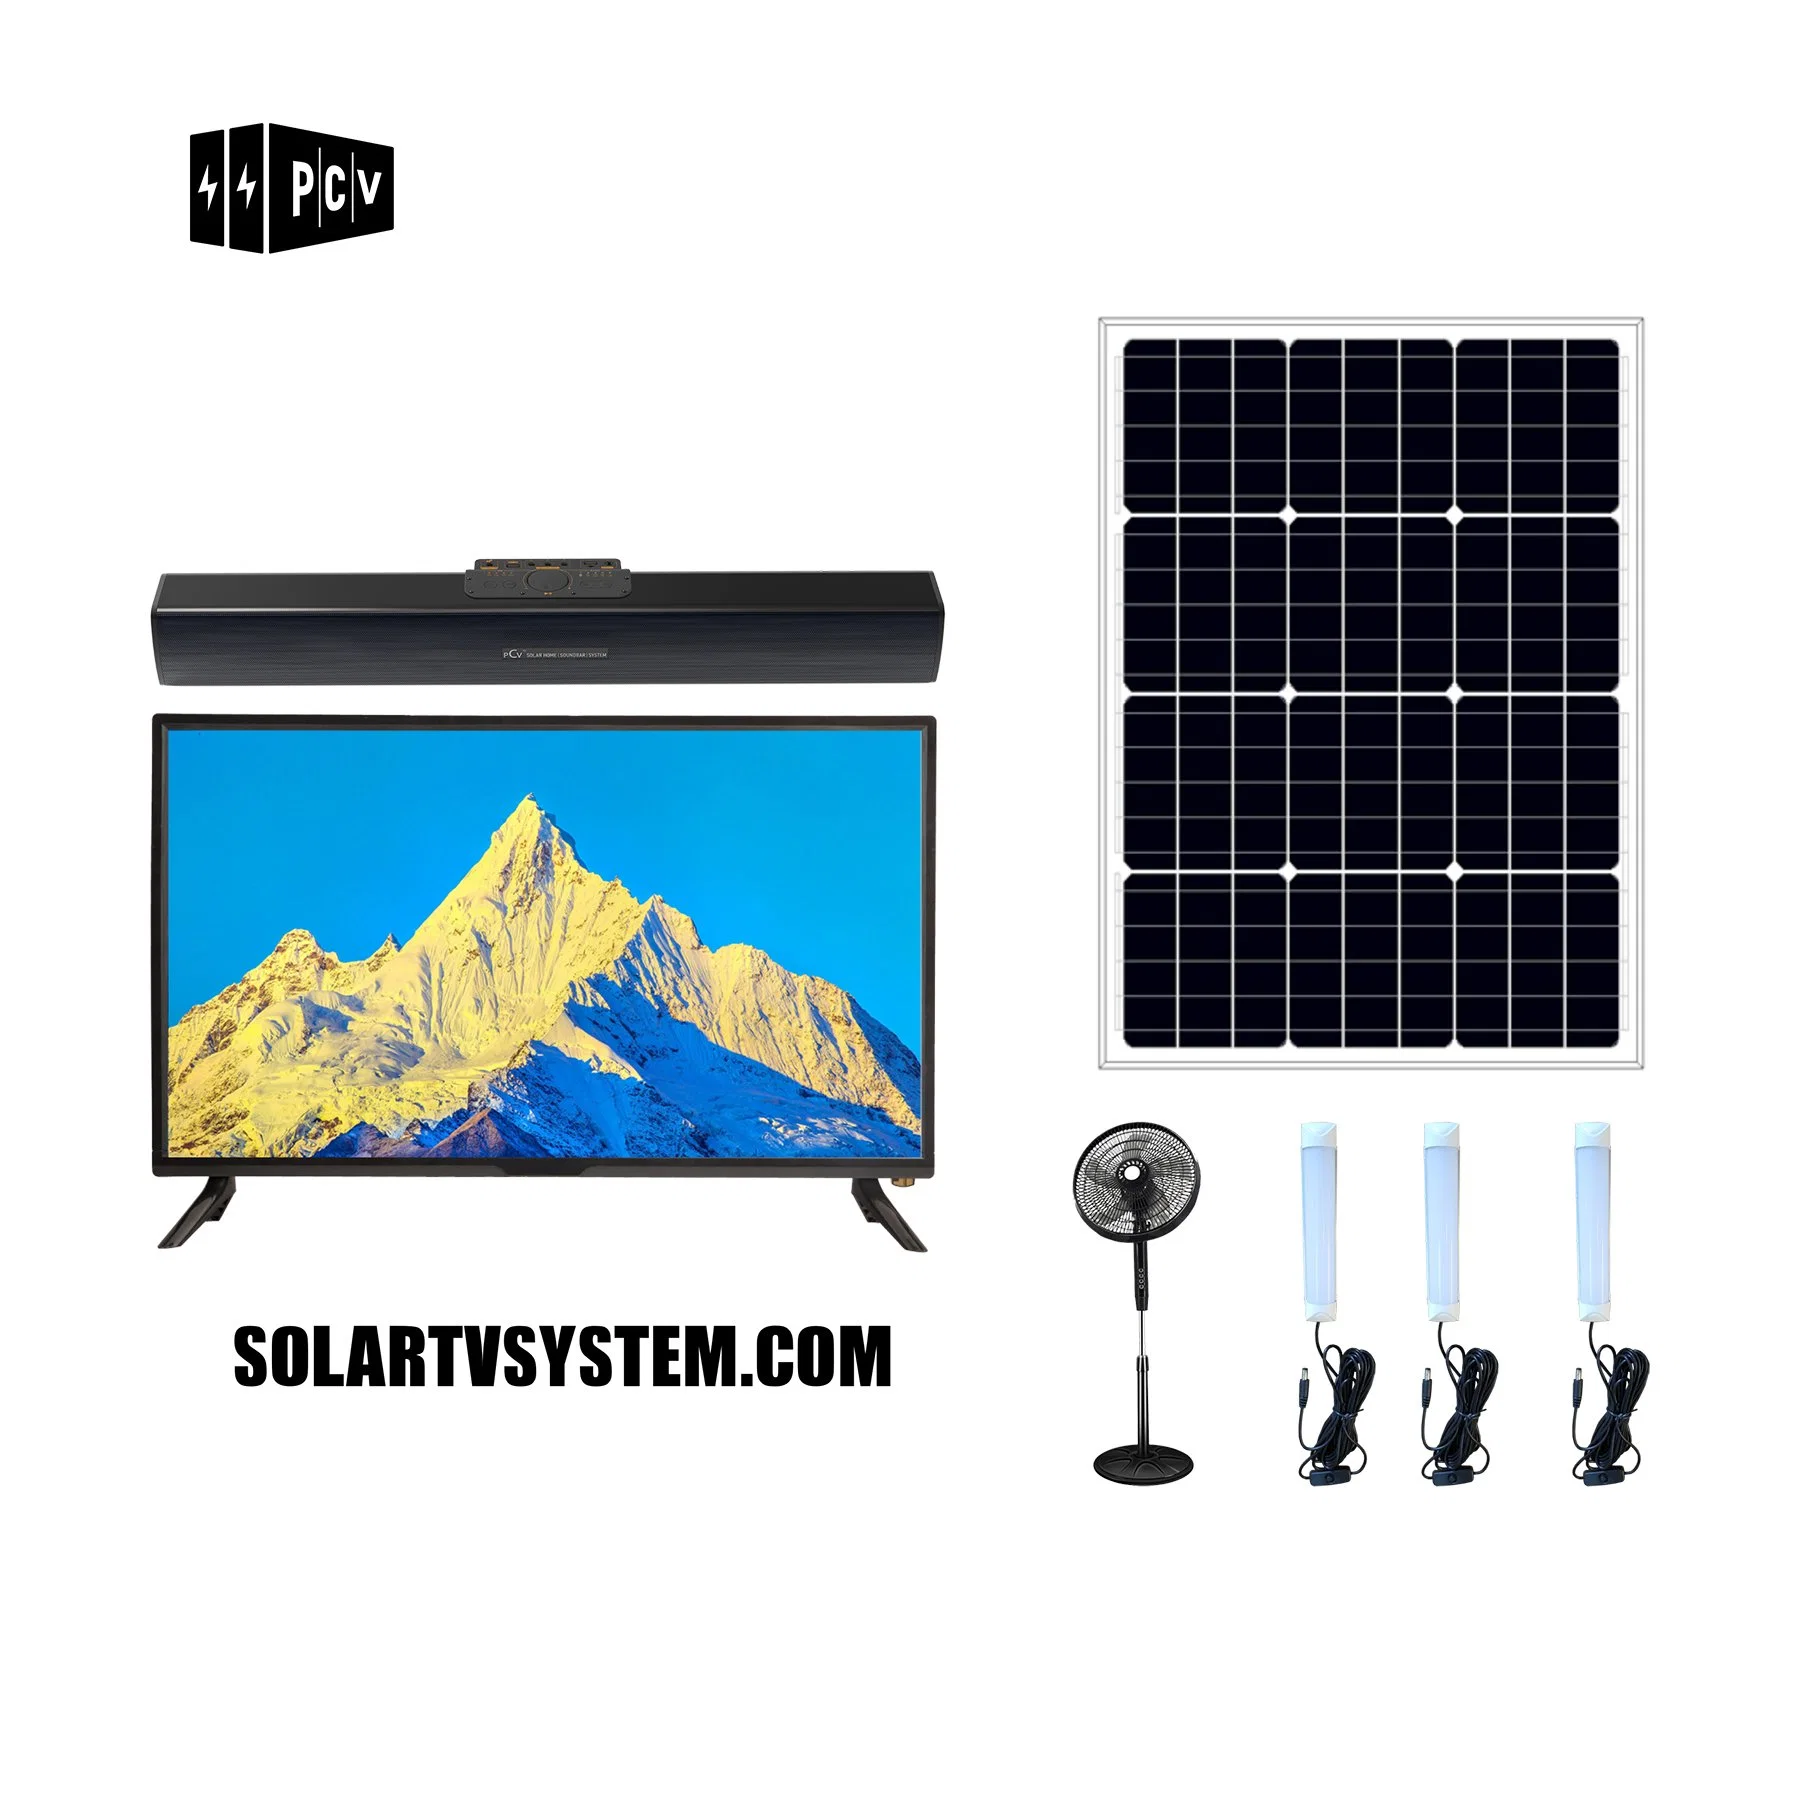 Pcv Solar Sound-Bar TV System for Home Power Supply for Light+Fan+TV+Speaker Home Audio&Video